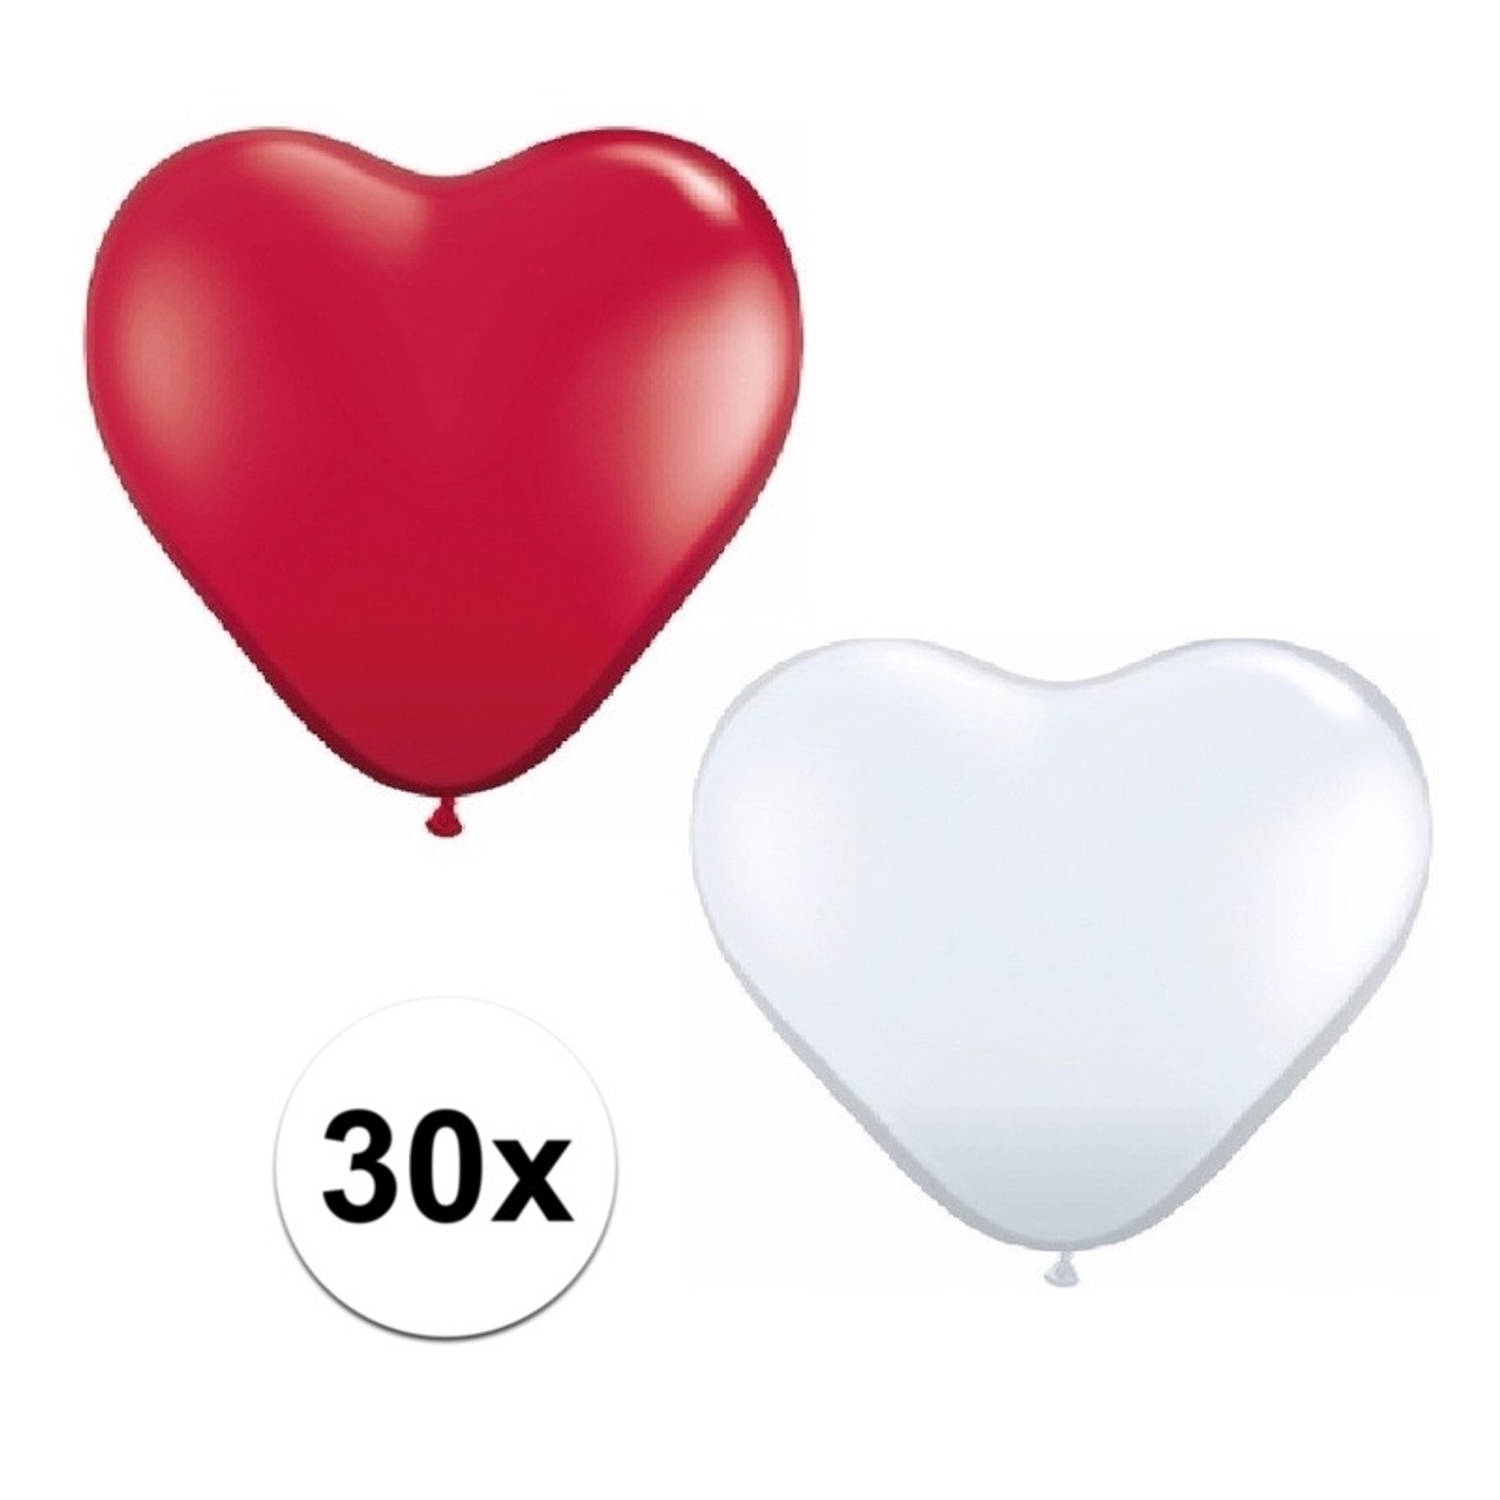 30x huwelijk ballonnen wit / rood hartjes versiering - Ballonnen